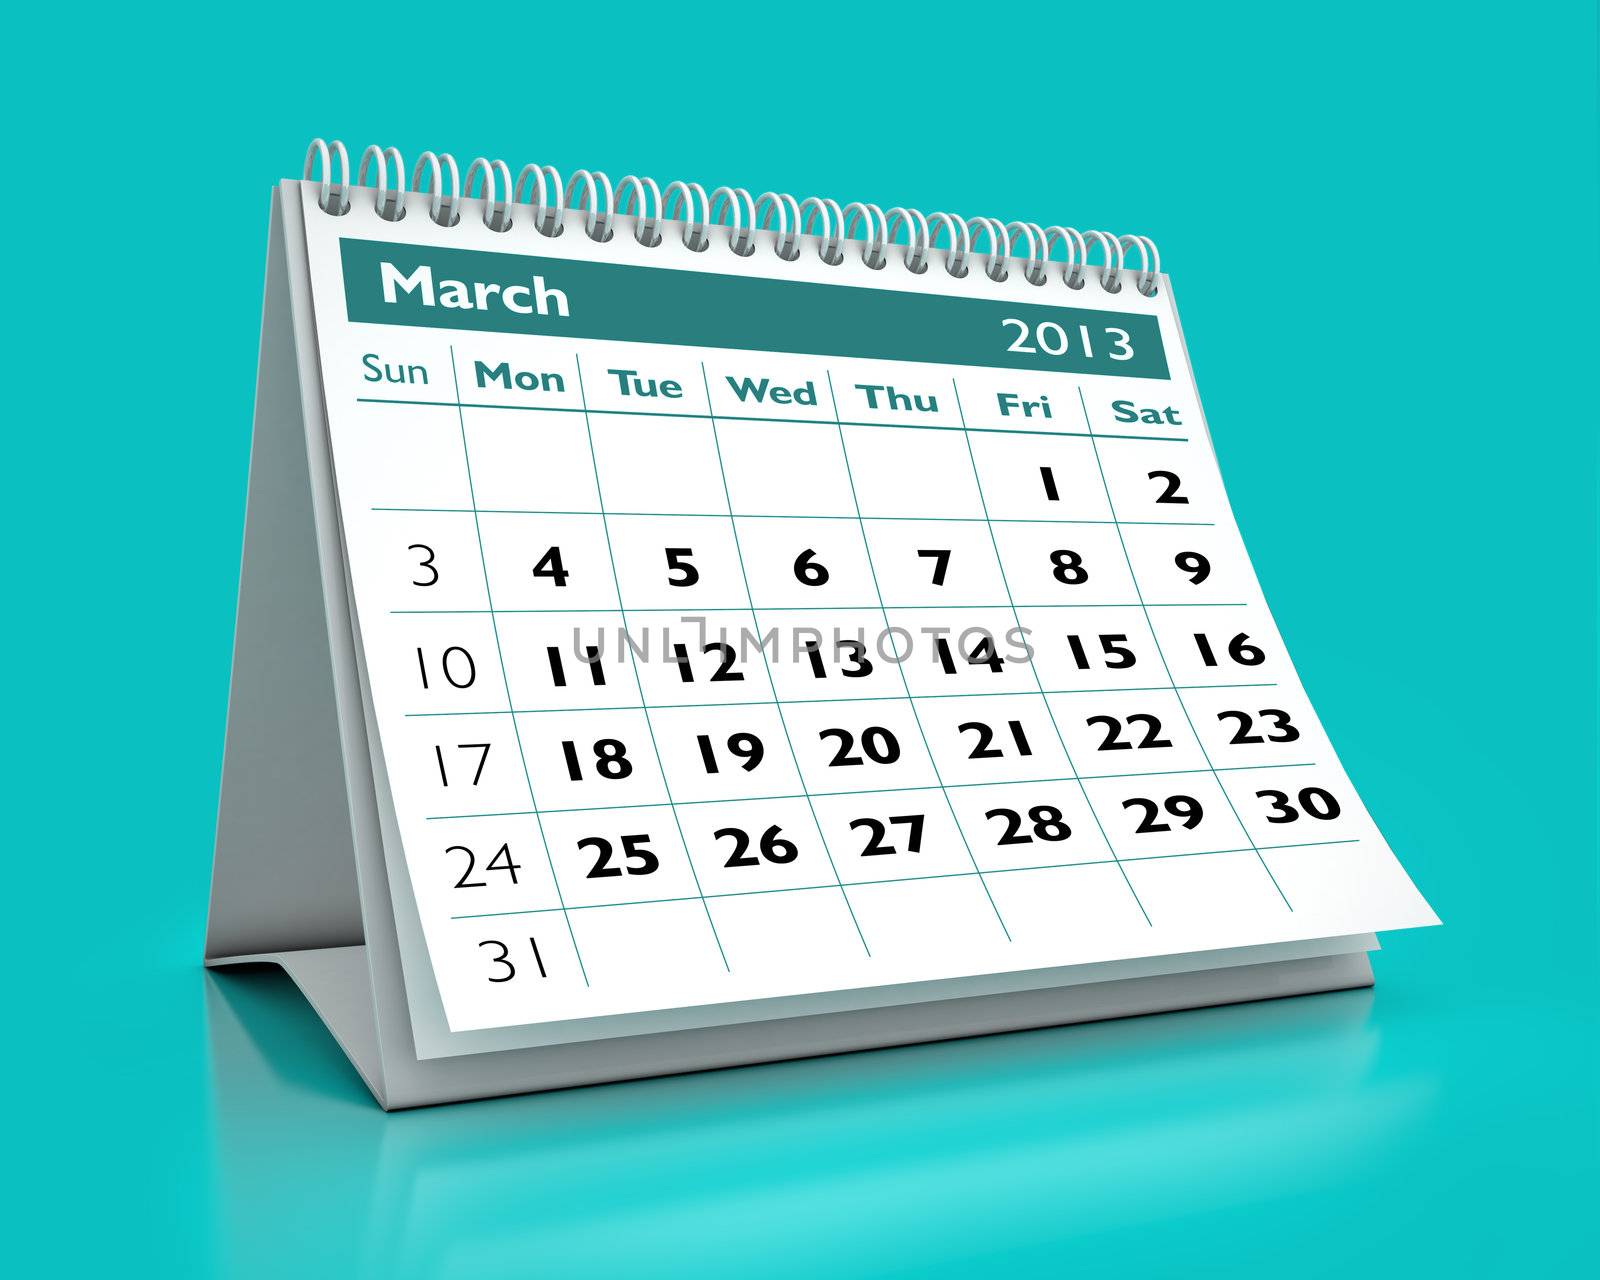 March 2013 Calendar by benjaminet